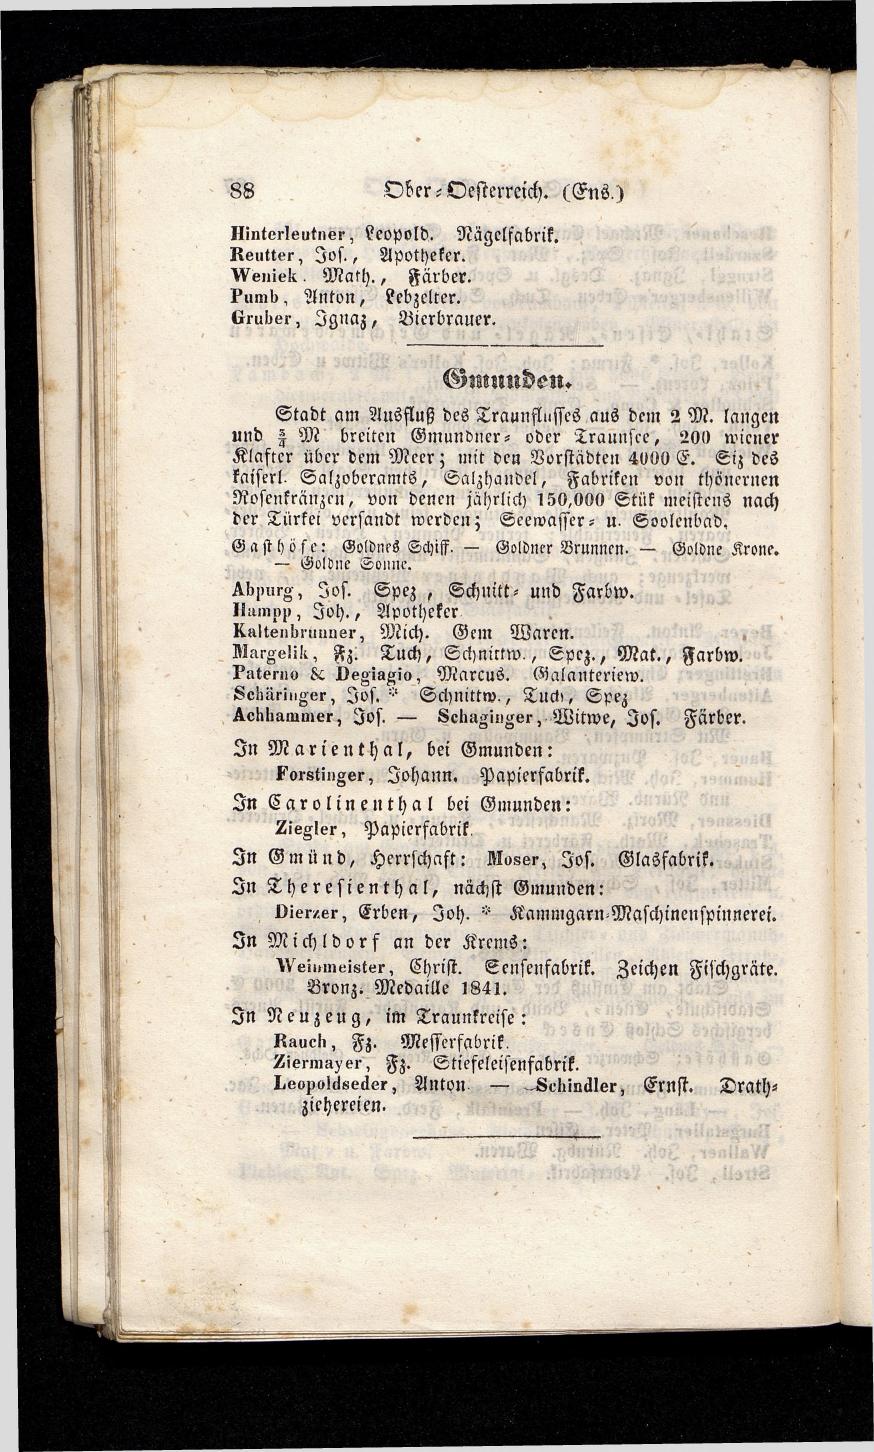 Grosses Adressbuch der Kaufleute. No. 13. Oesterreich ober u. unter der Enns 1844 - Seite 92